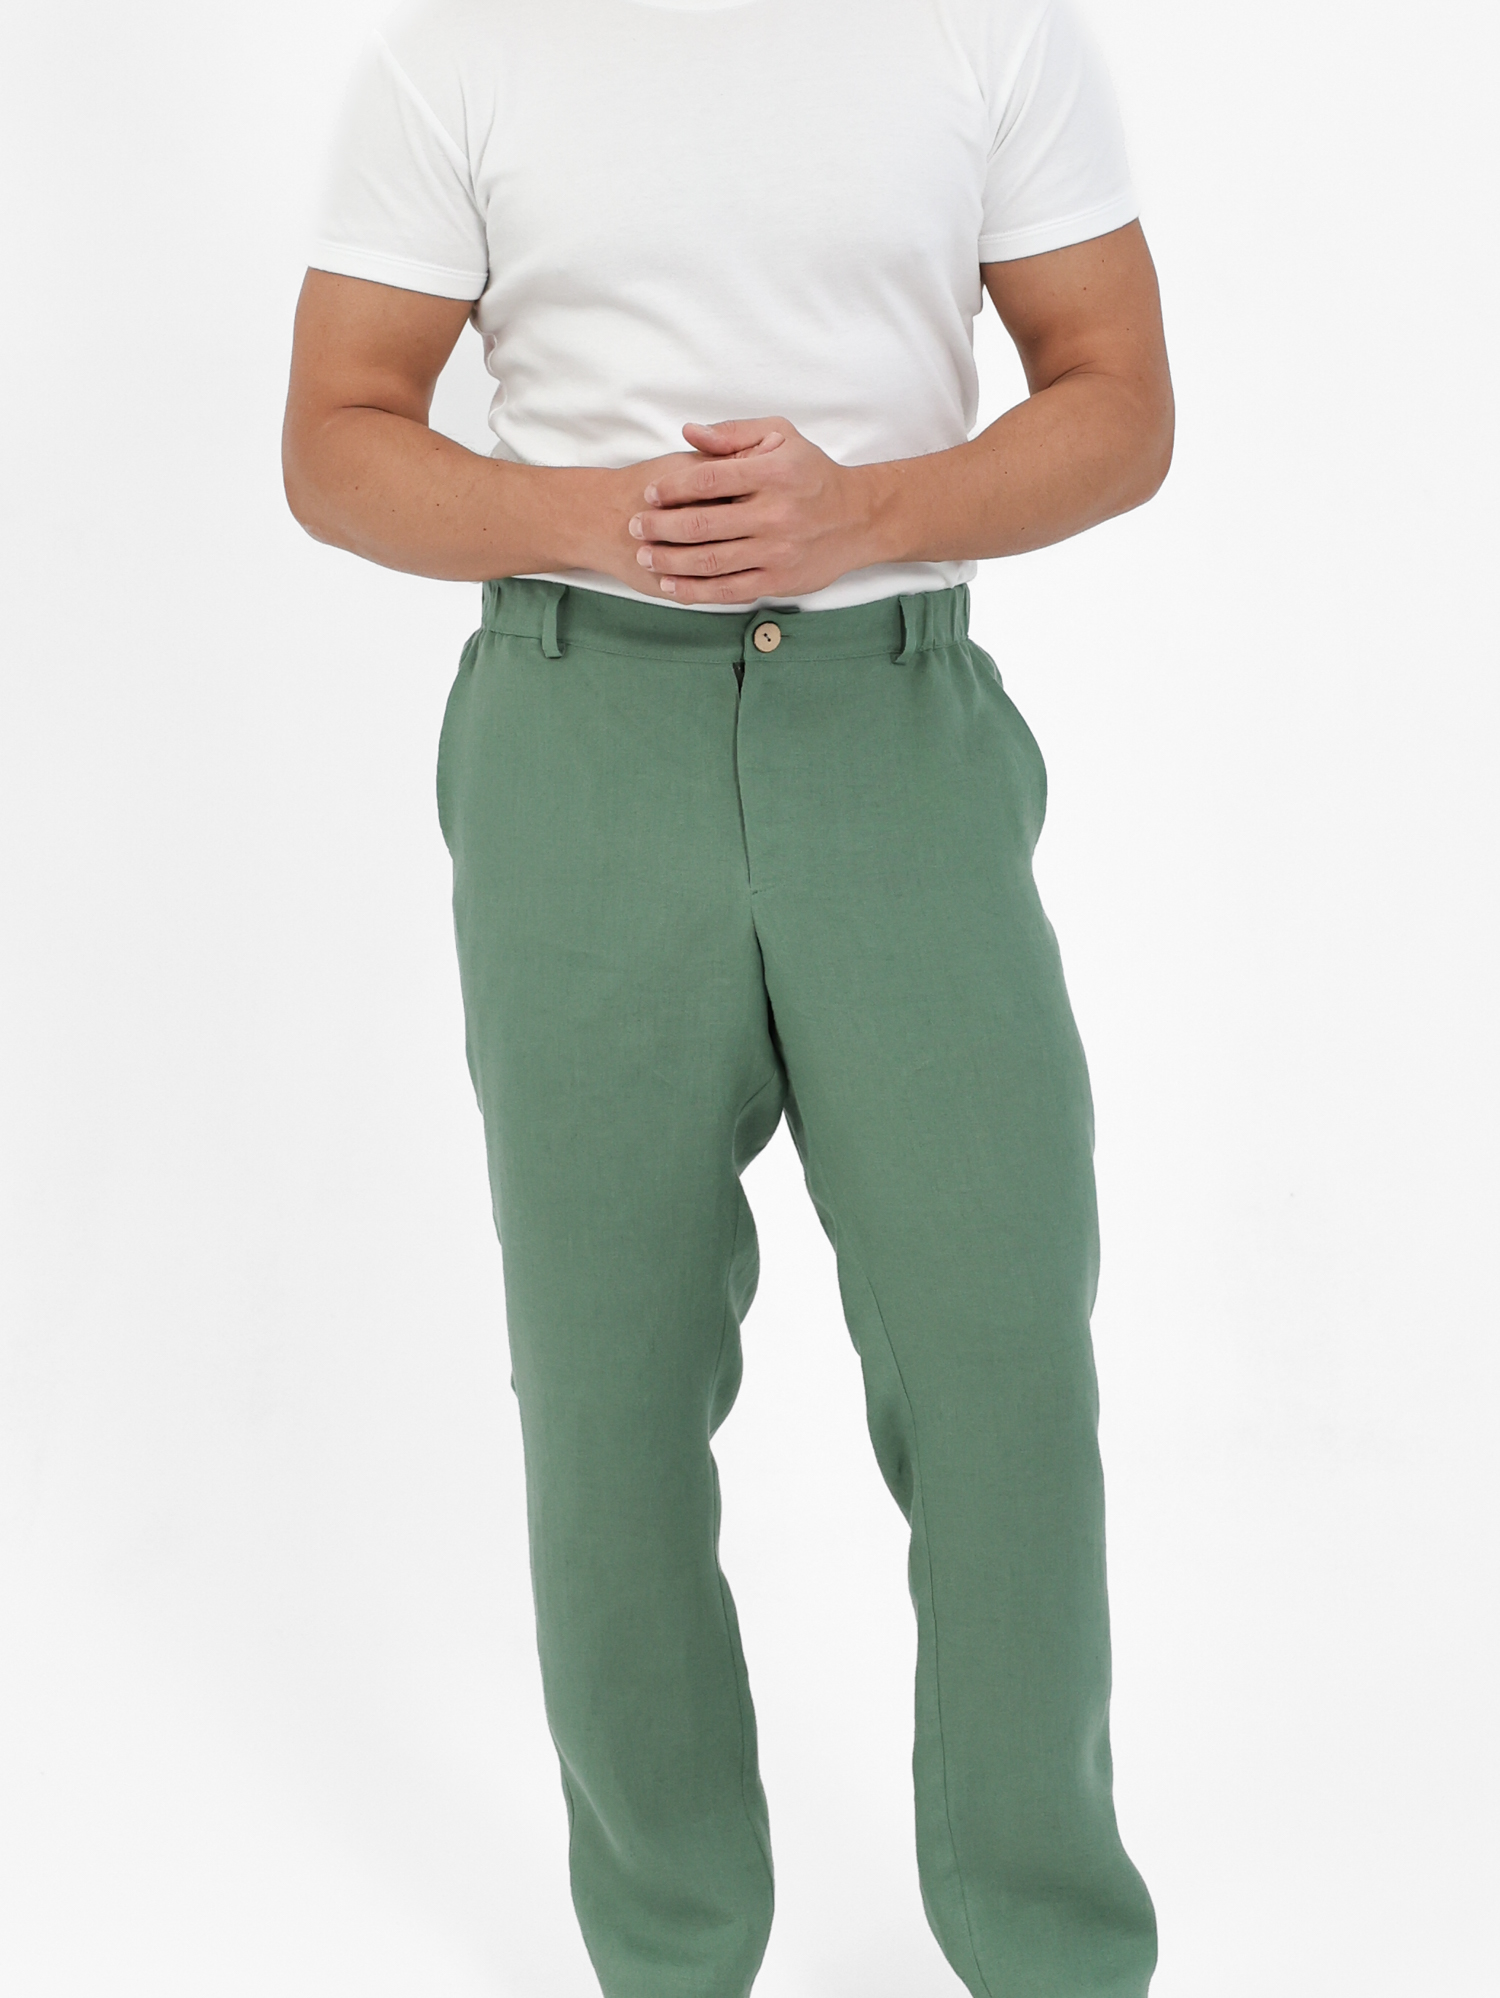 Men's green linen pants